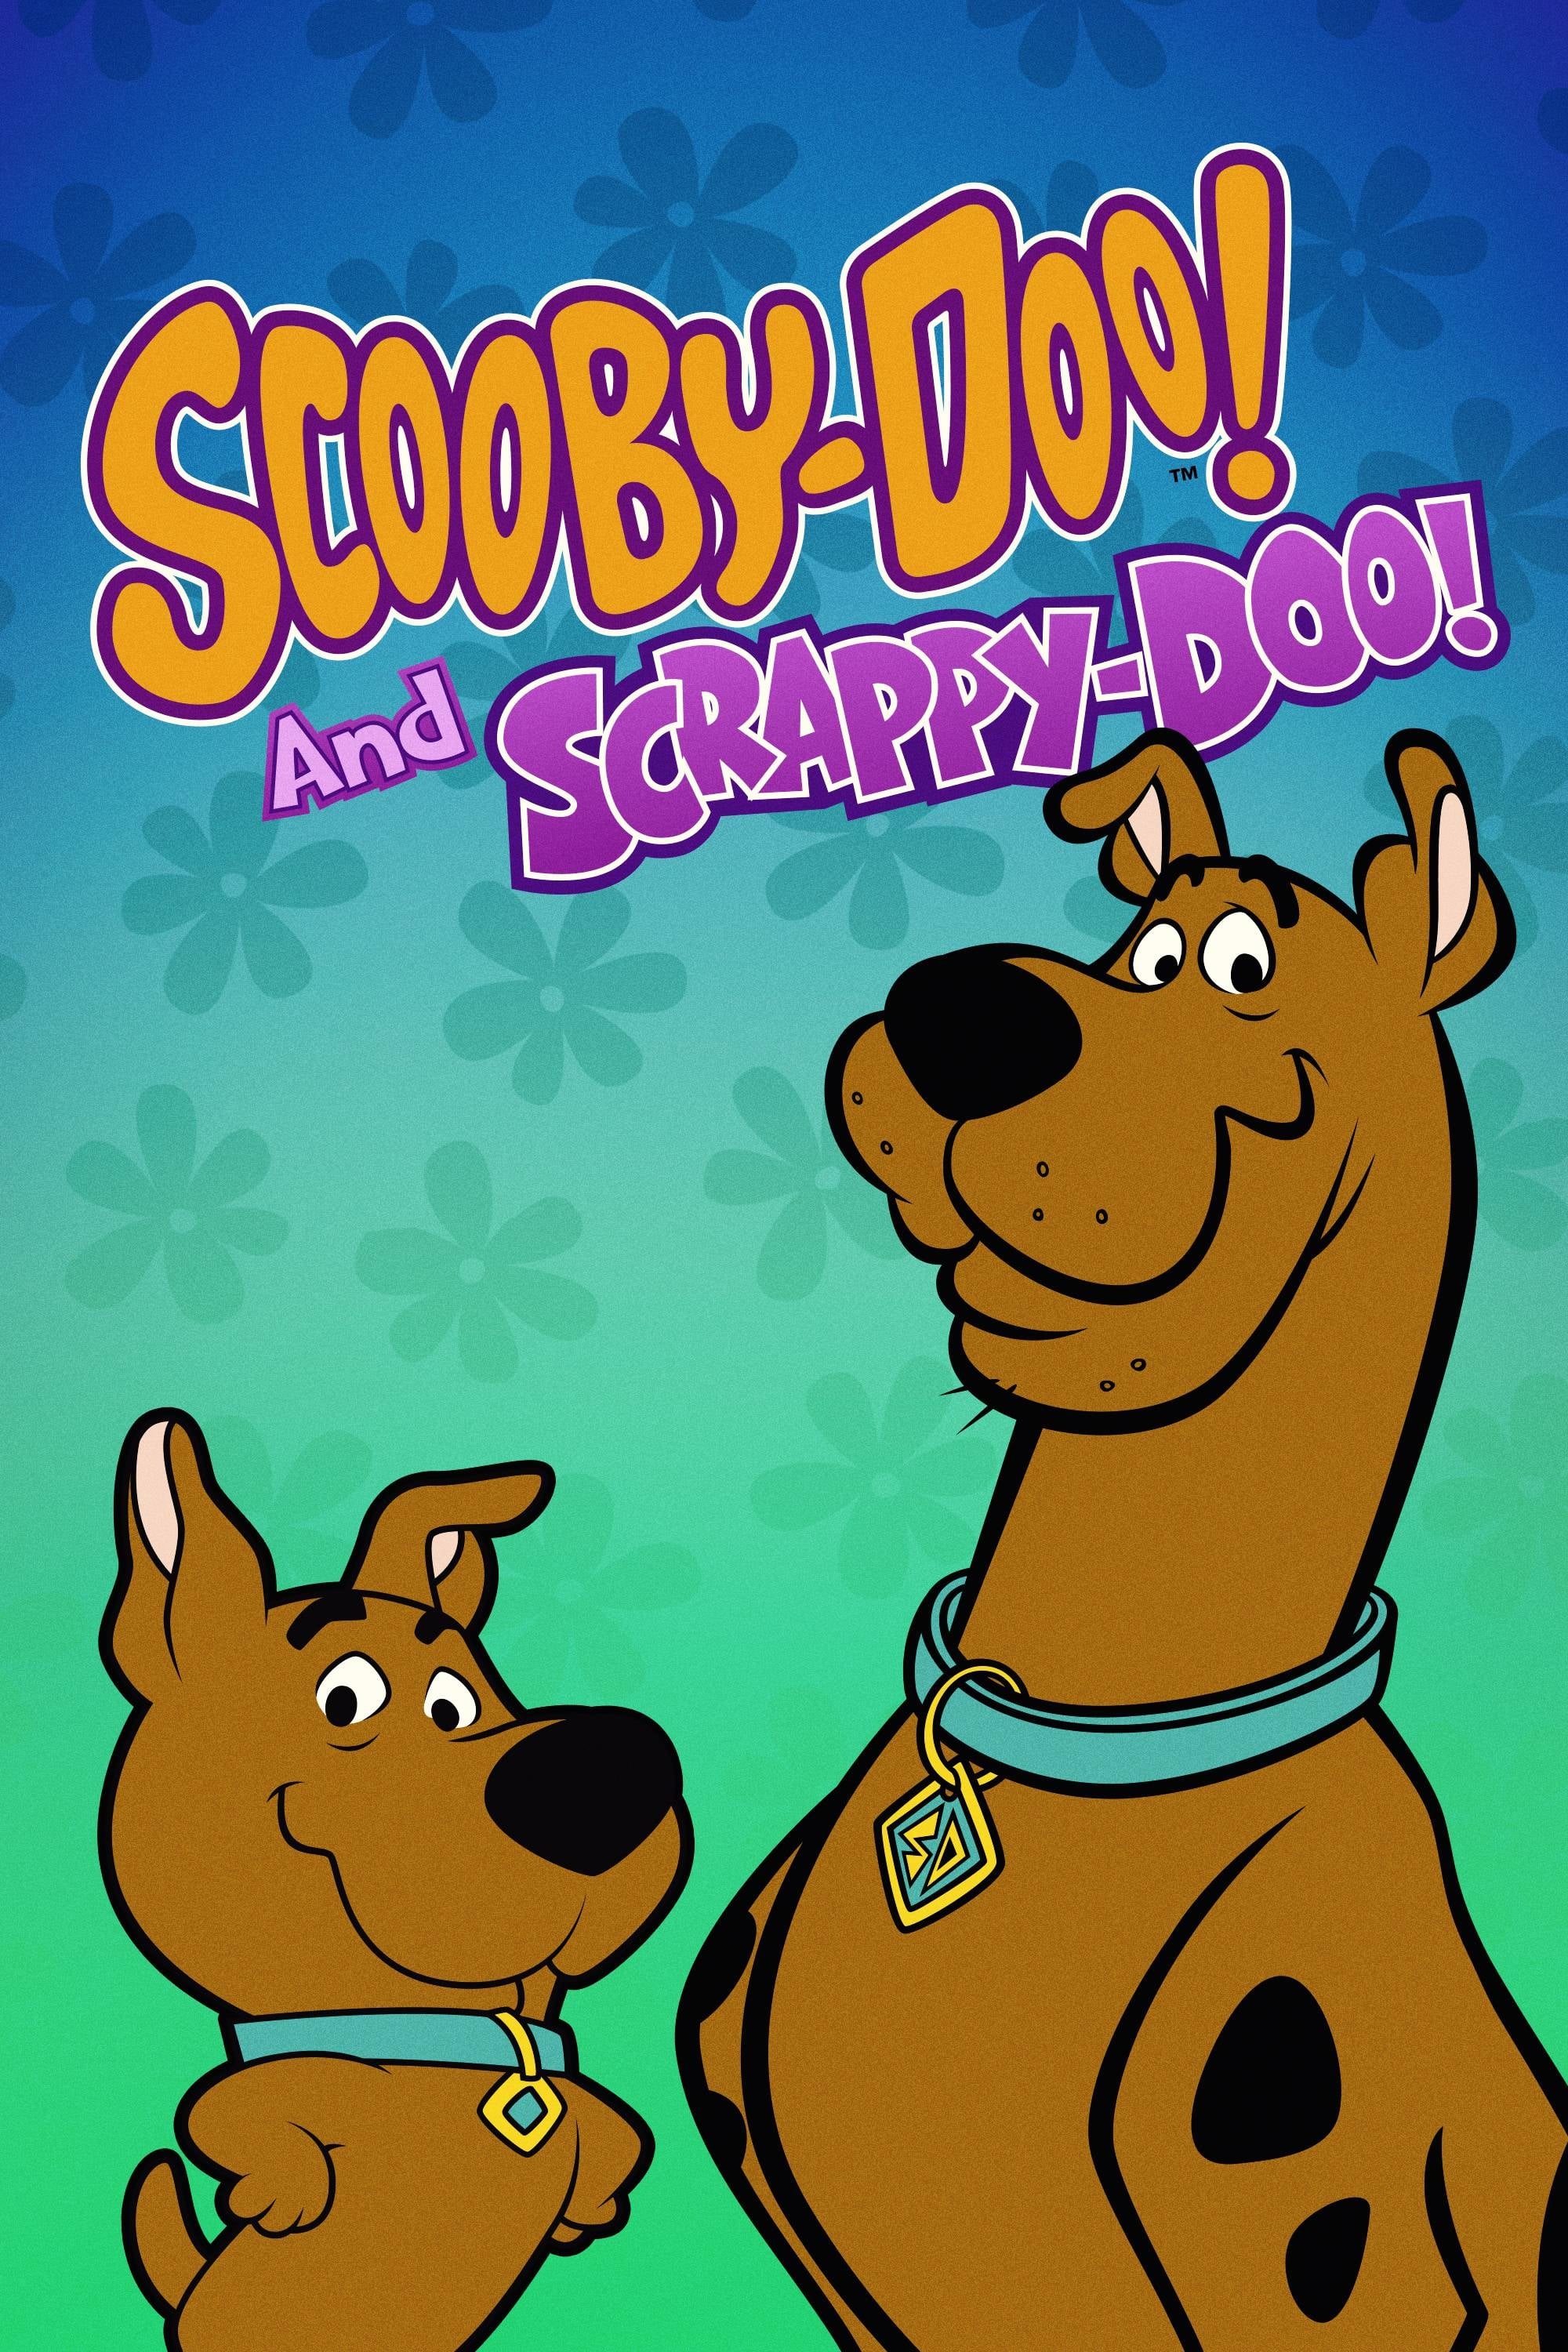 El show de Scooby-Doo y Scrappy-Doo (1979)